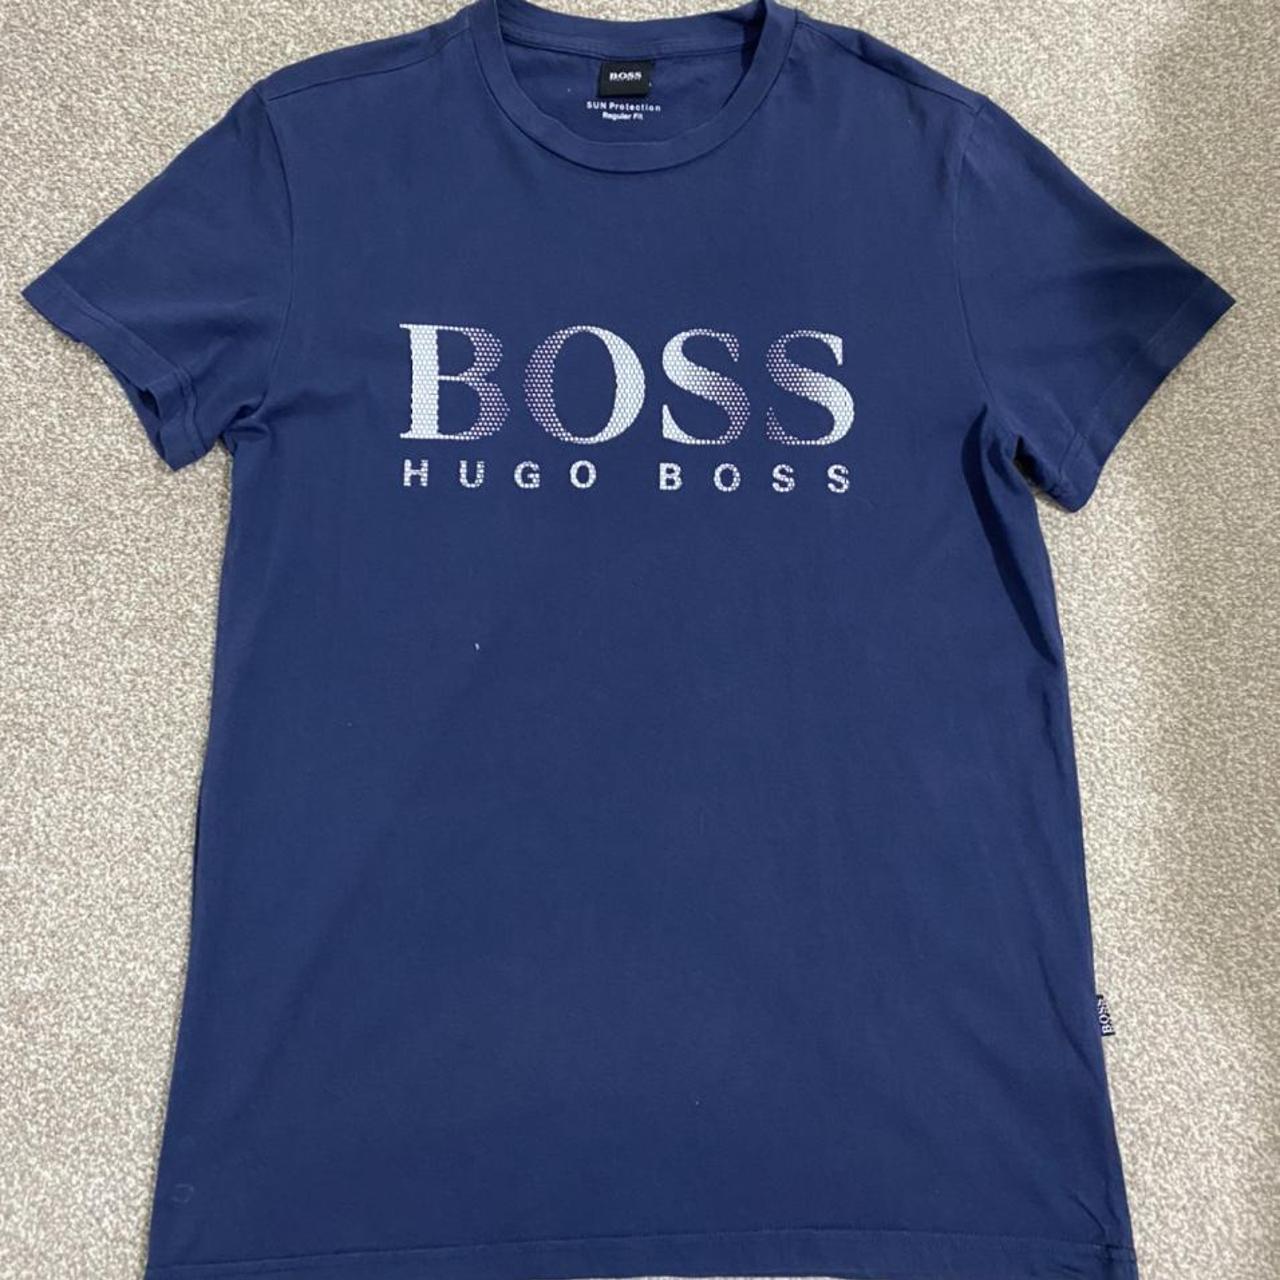 Hugo Boss Men's White and Blue T-shirt (2)